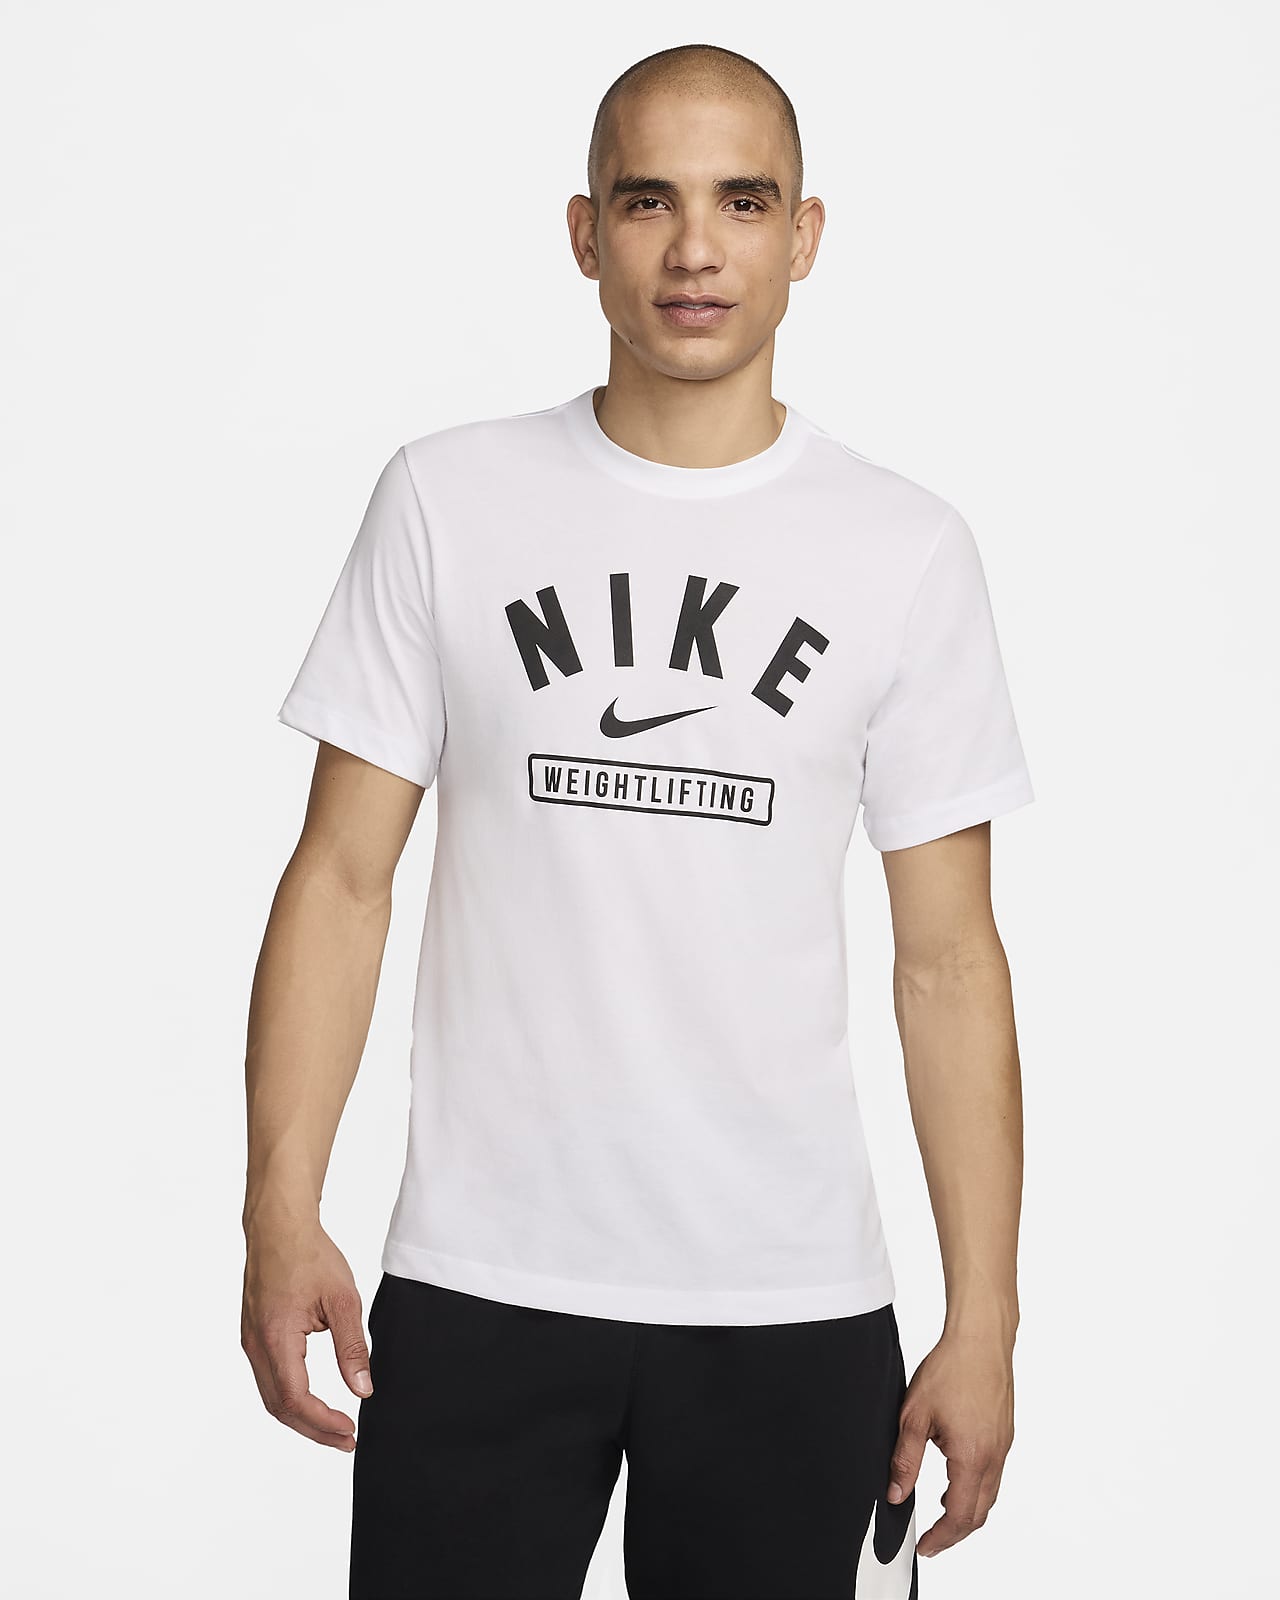 Nike Men's Weightlifting T-Shirt